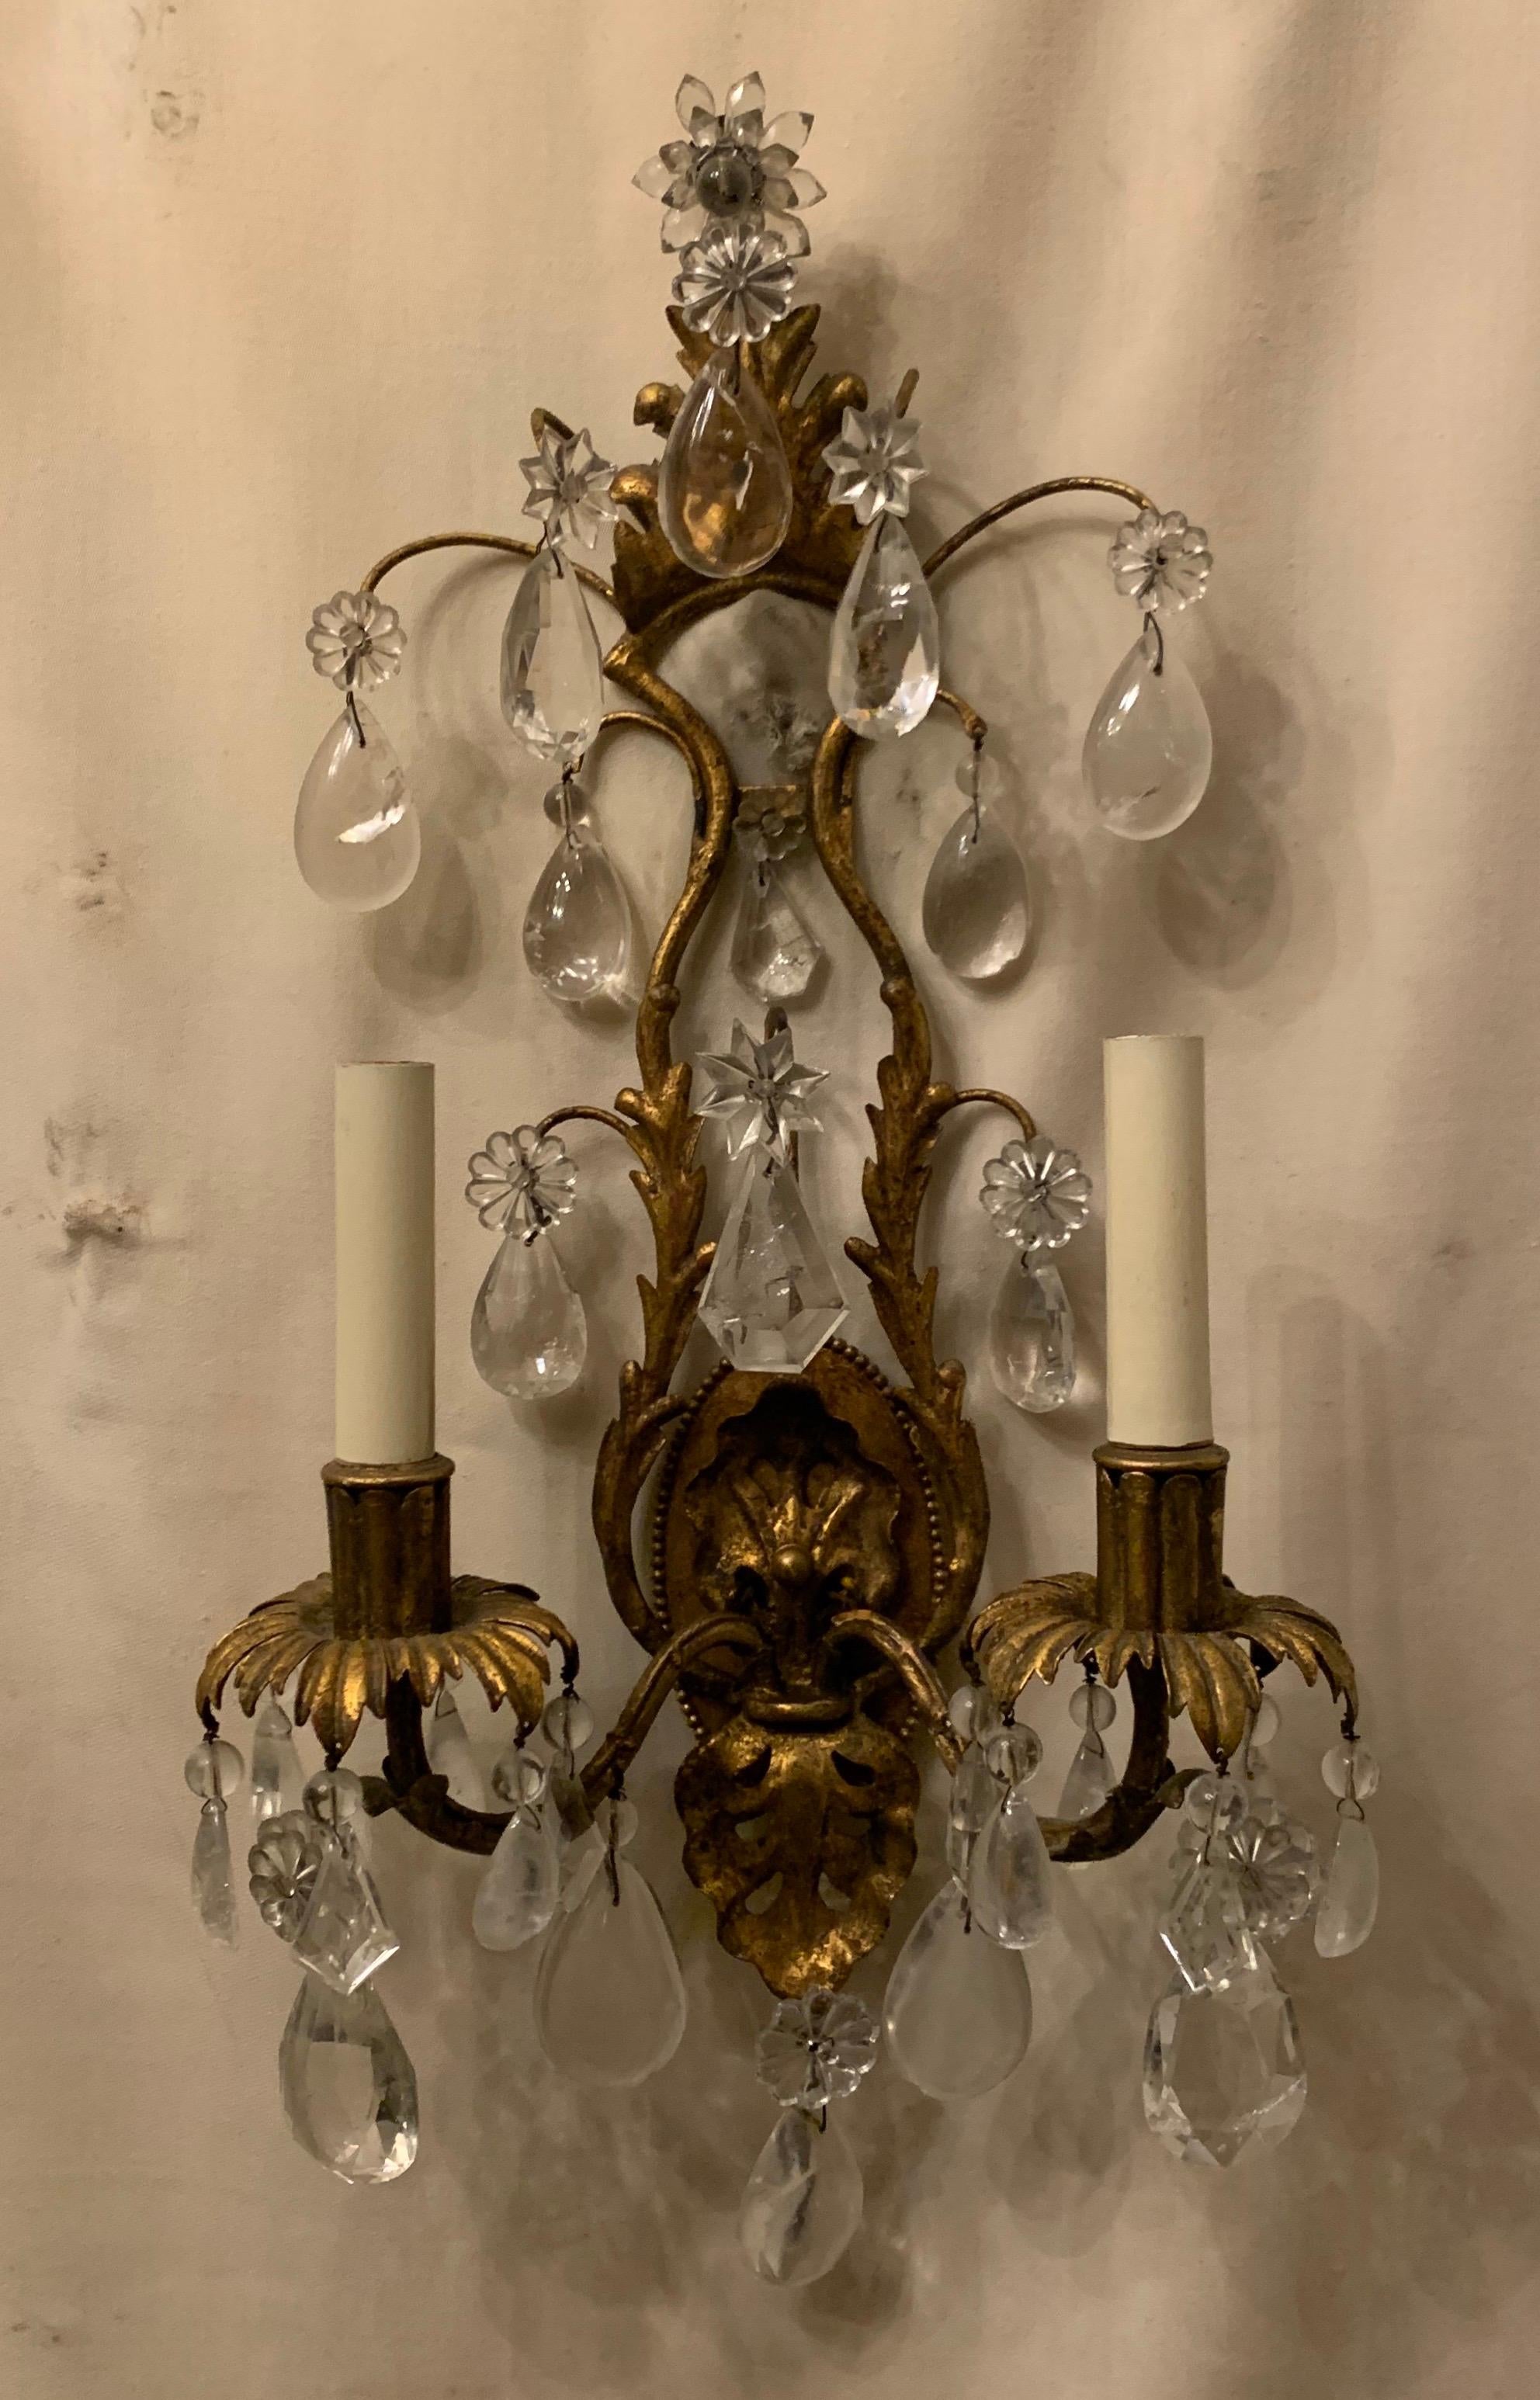 Une merveilleuse paire d'appliques vintage Maison Baguès en cristal de roche et or doré en filigrane avec deux chandeliers.